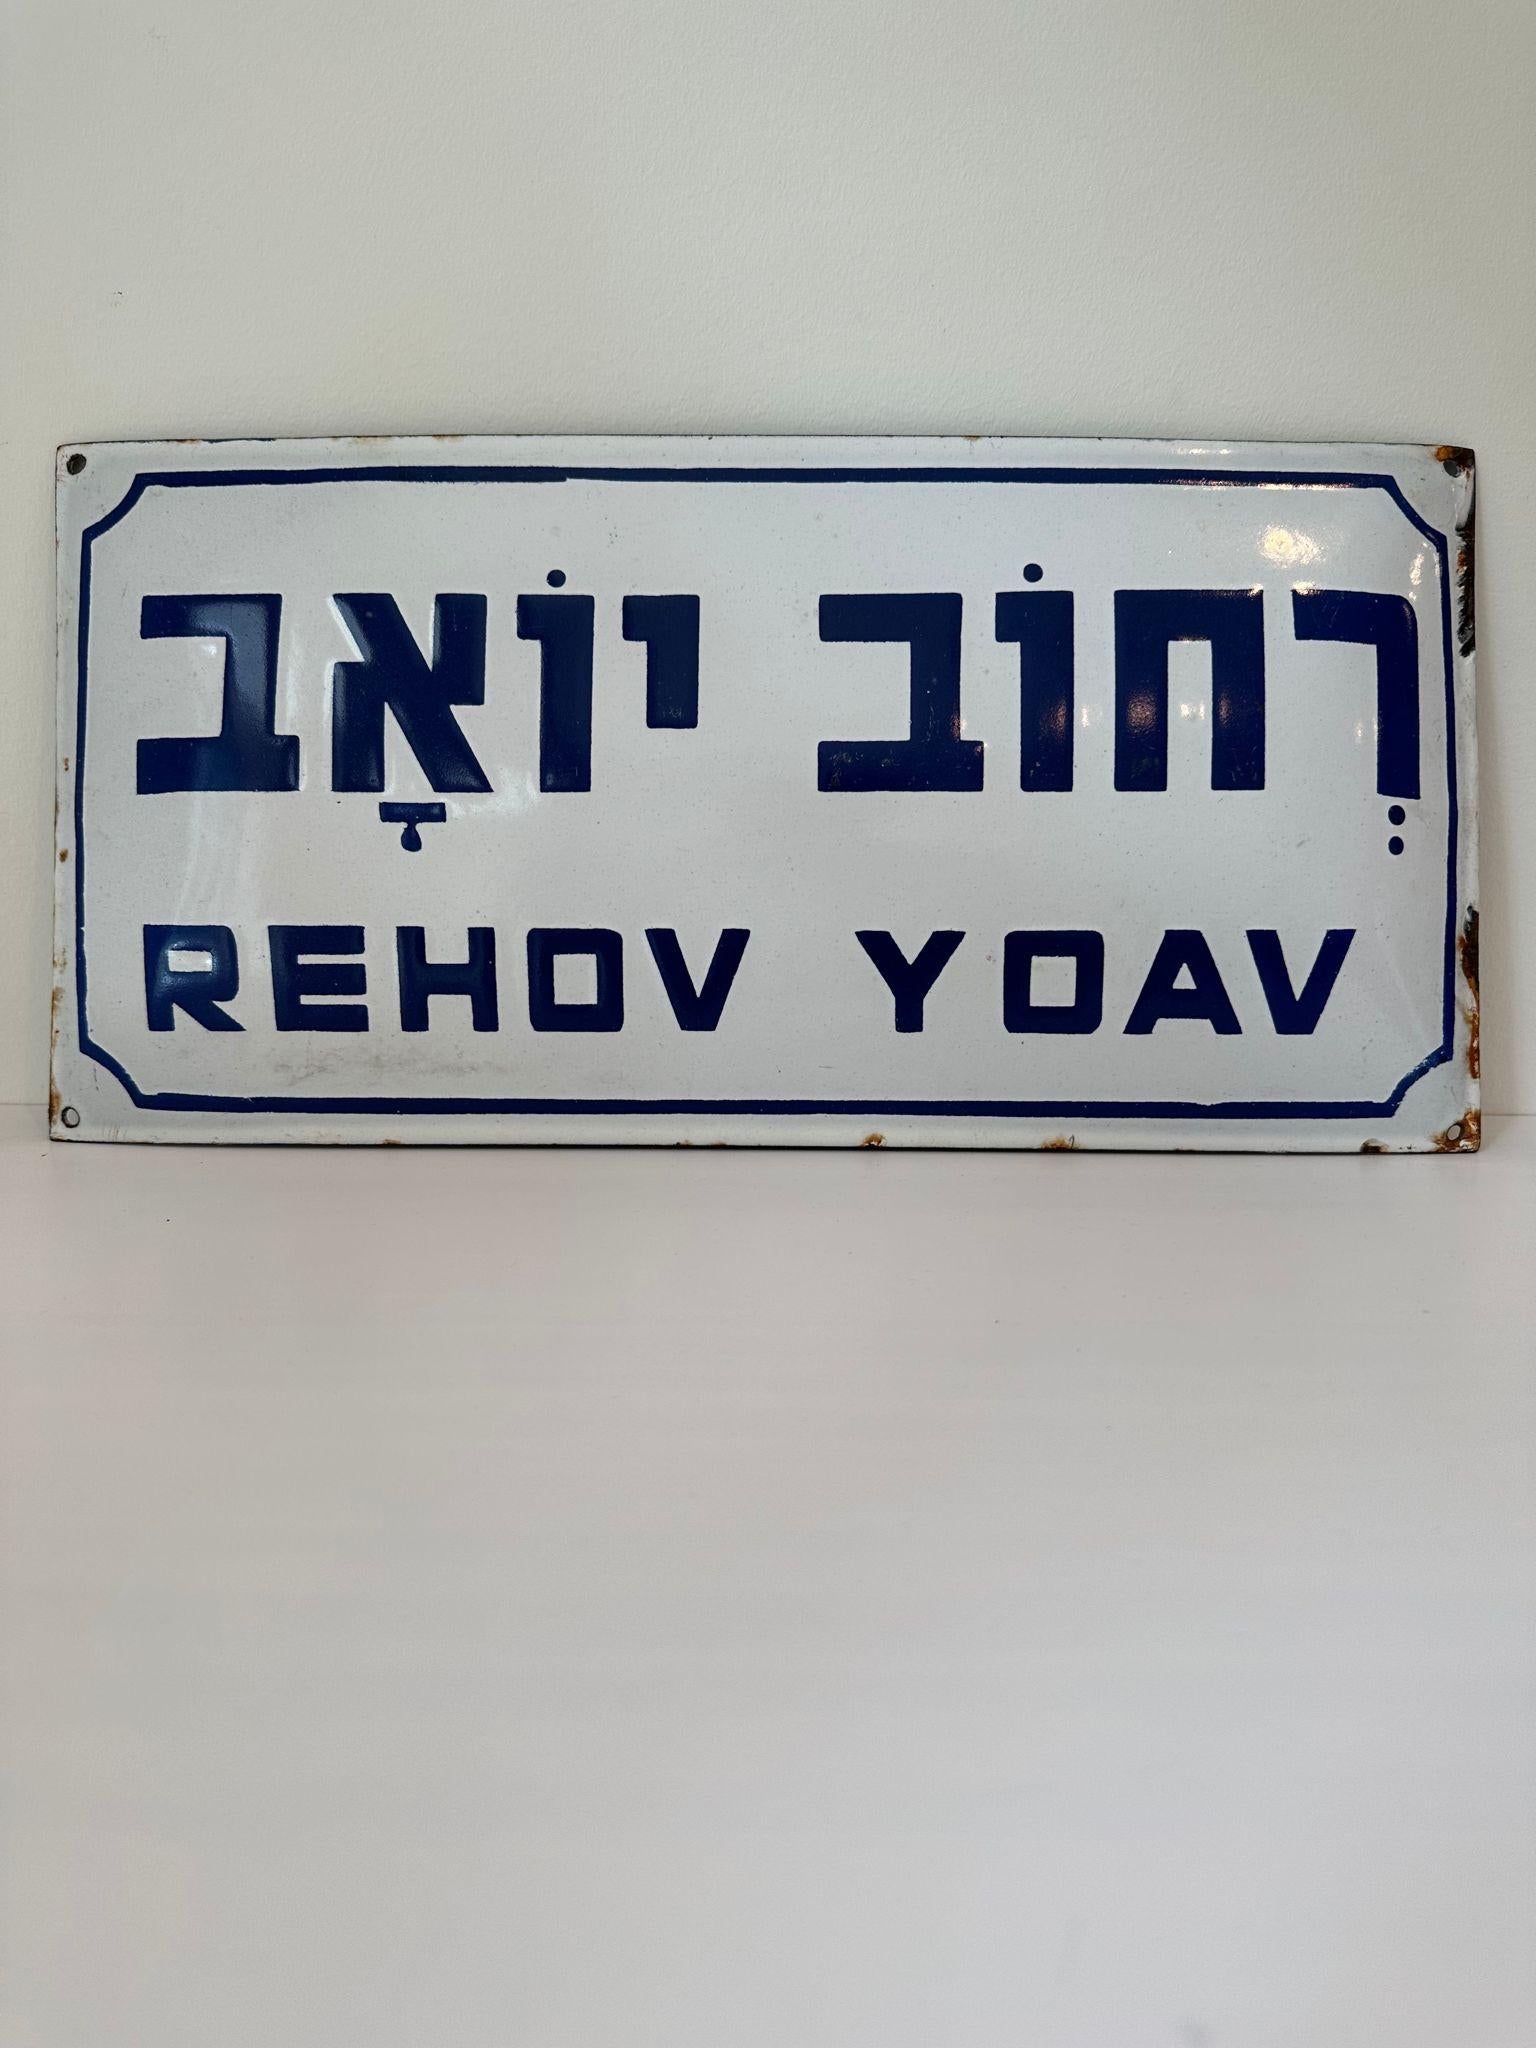 yoav name